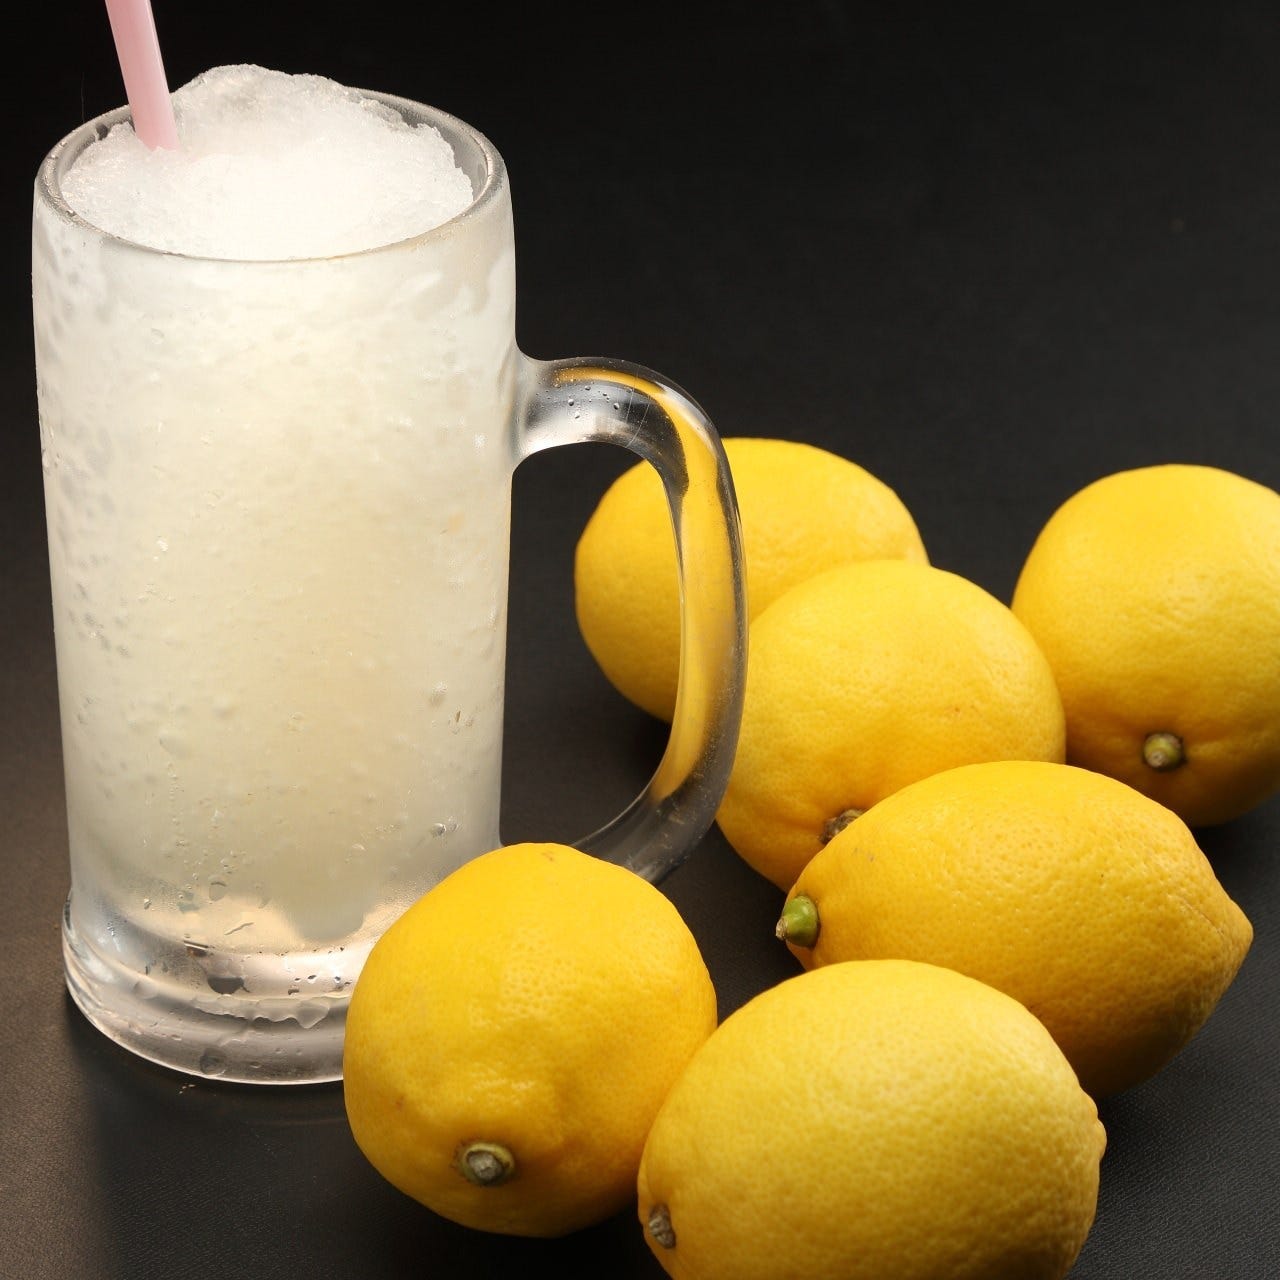 シャリシャリ食感が楽しいシャーベット仕立てのレモンサワー